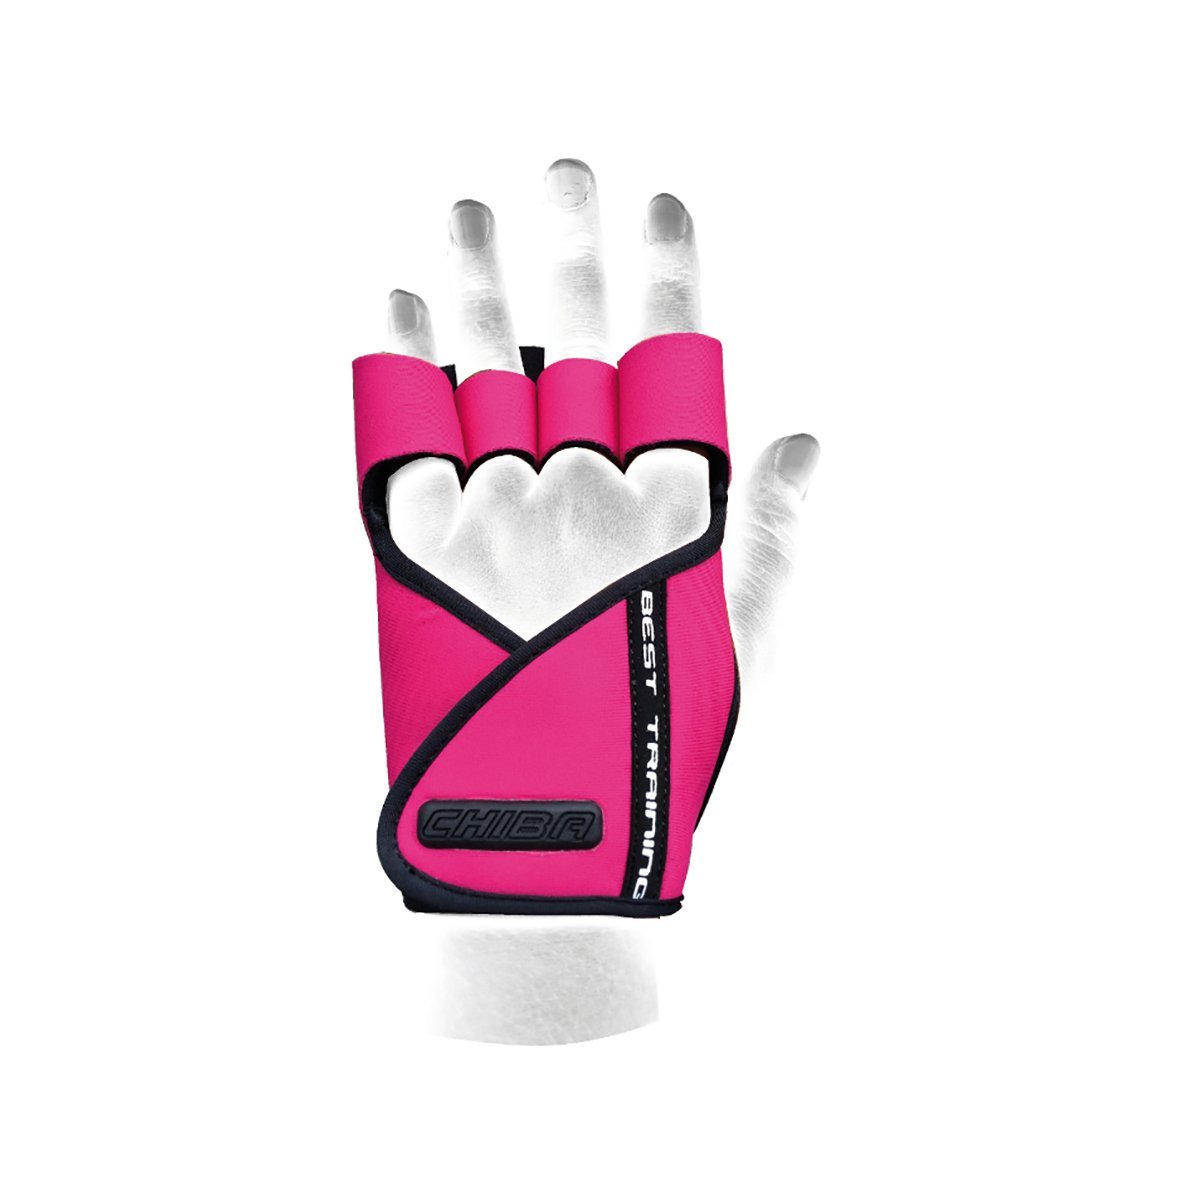 E-shop Dámske fitness rukavice Lady Motivation Pink - Chiba, veľ. L